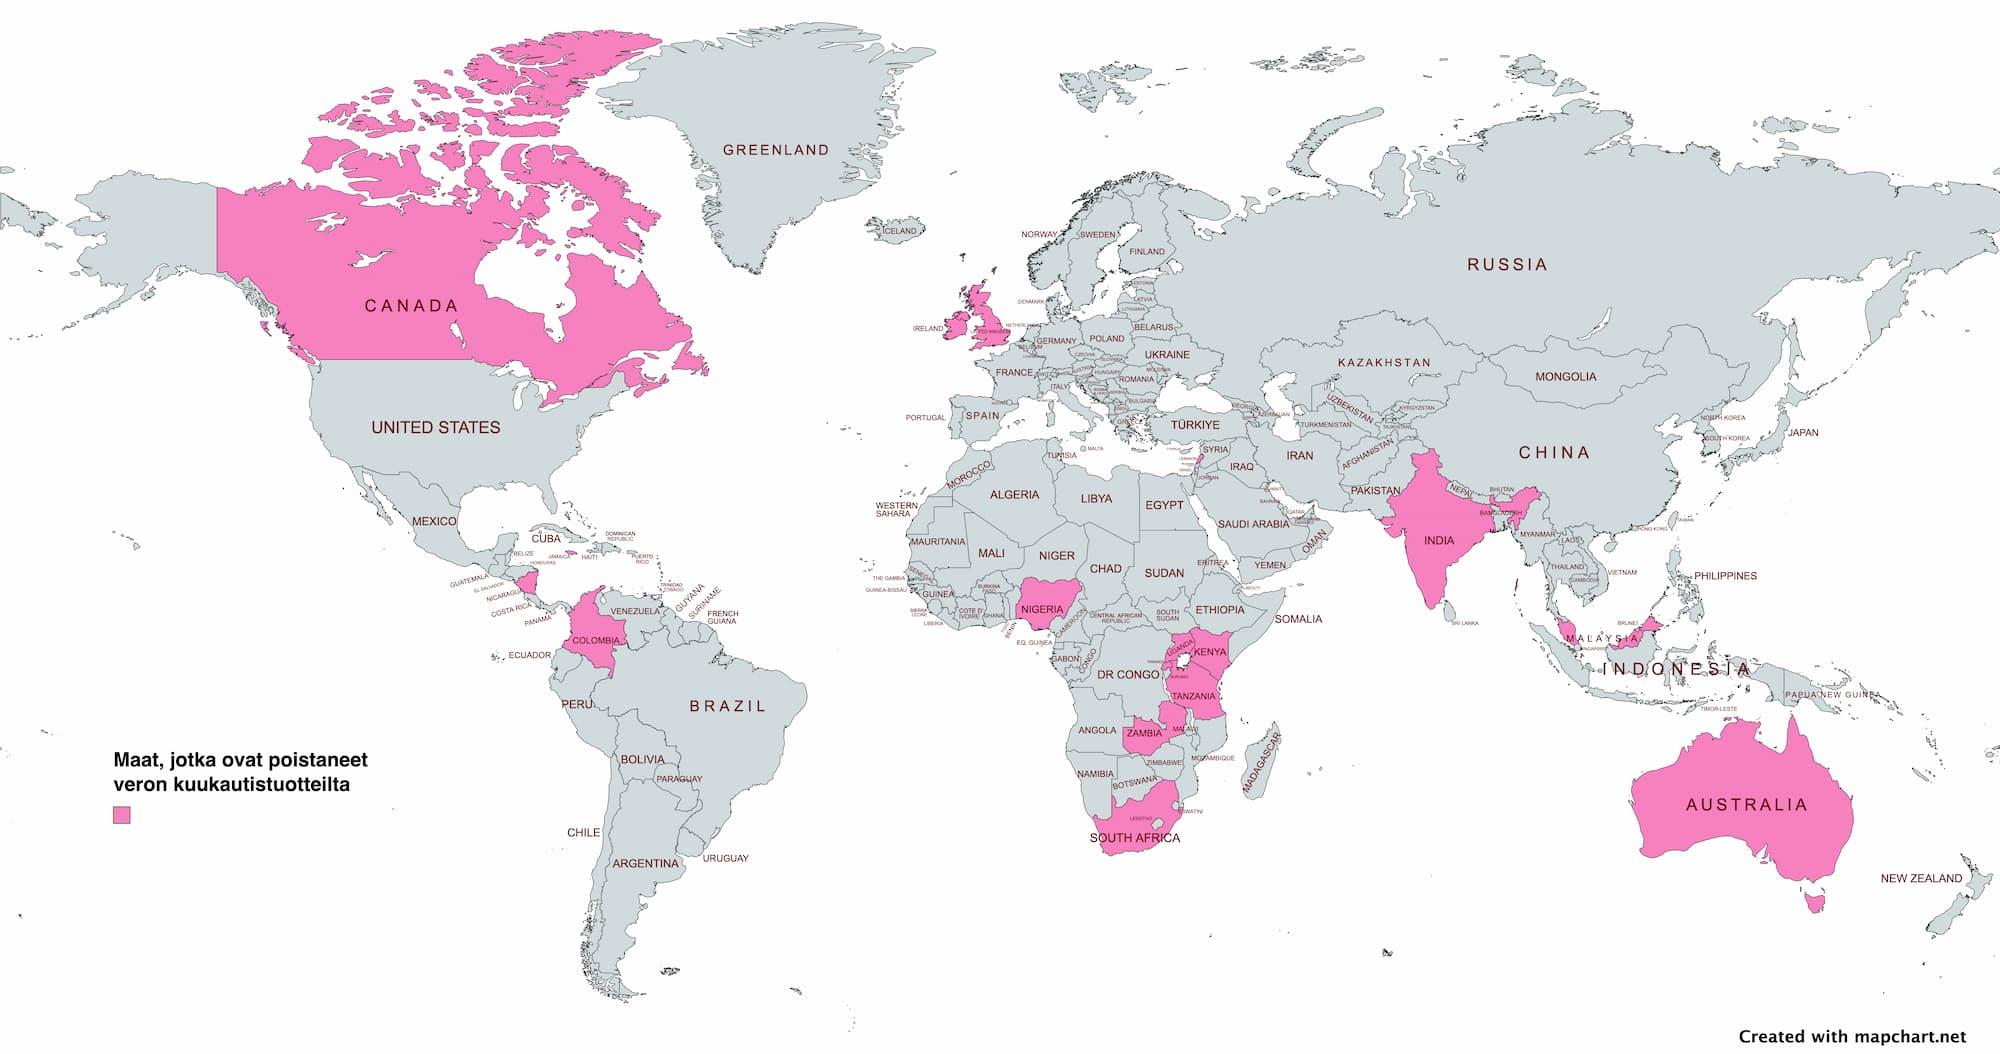 Kartta, jossa näkyy 17 maata, jossa kuukautistuotteiden verotus on poistettu